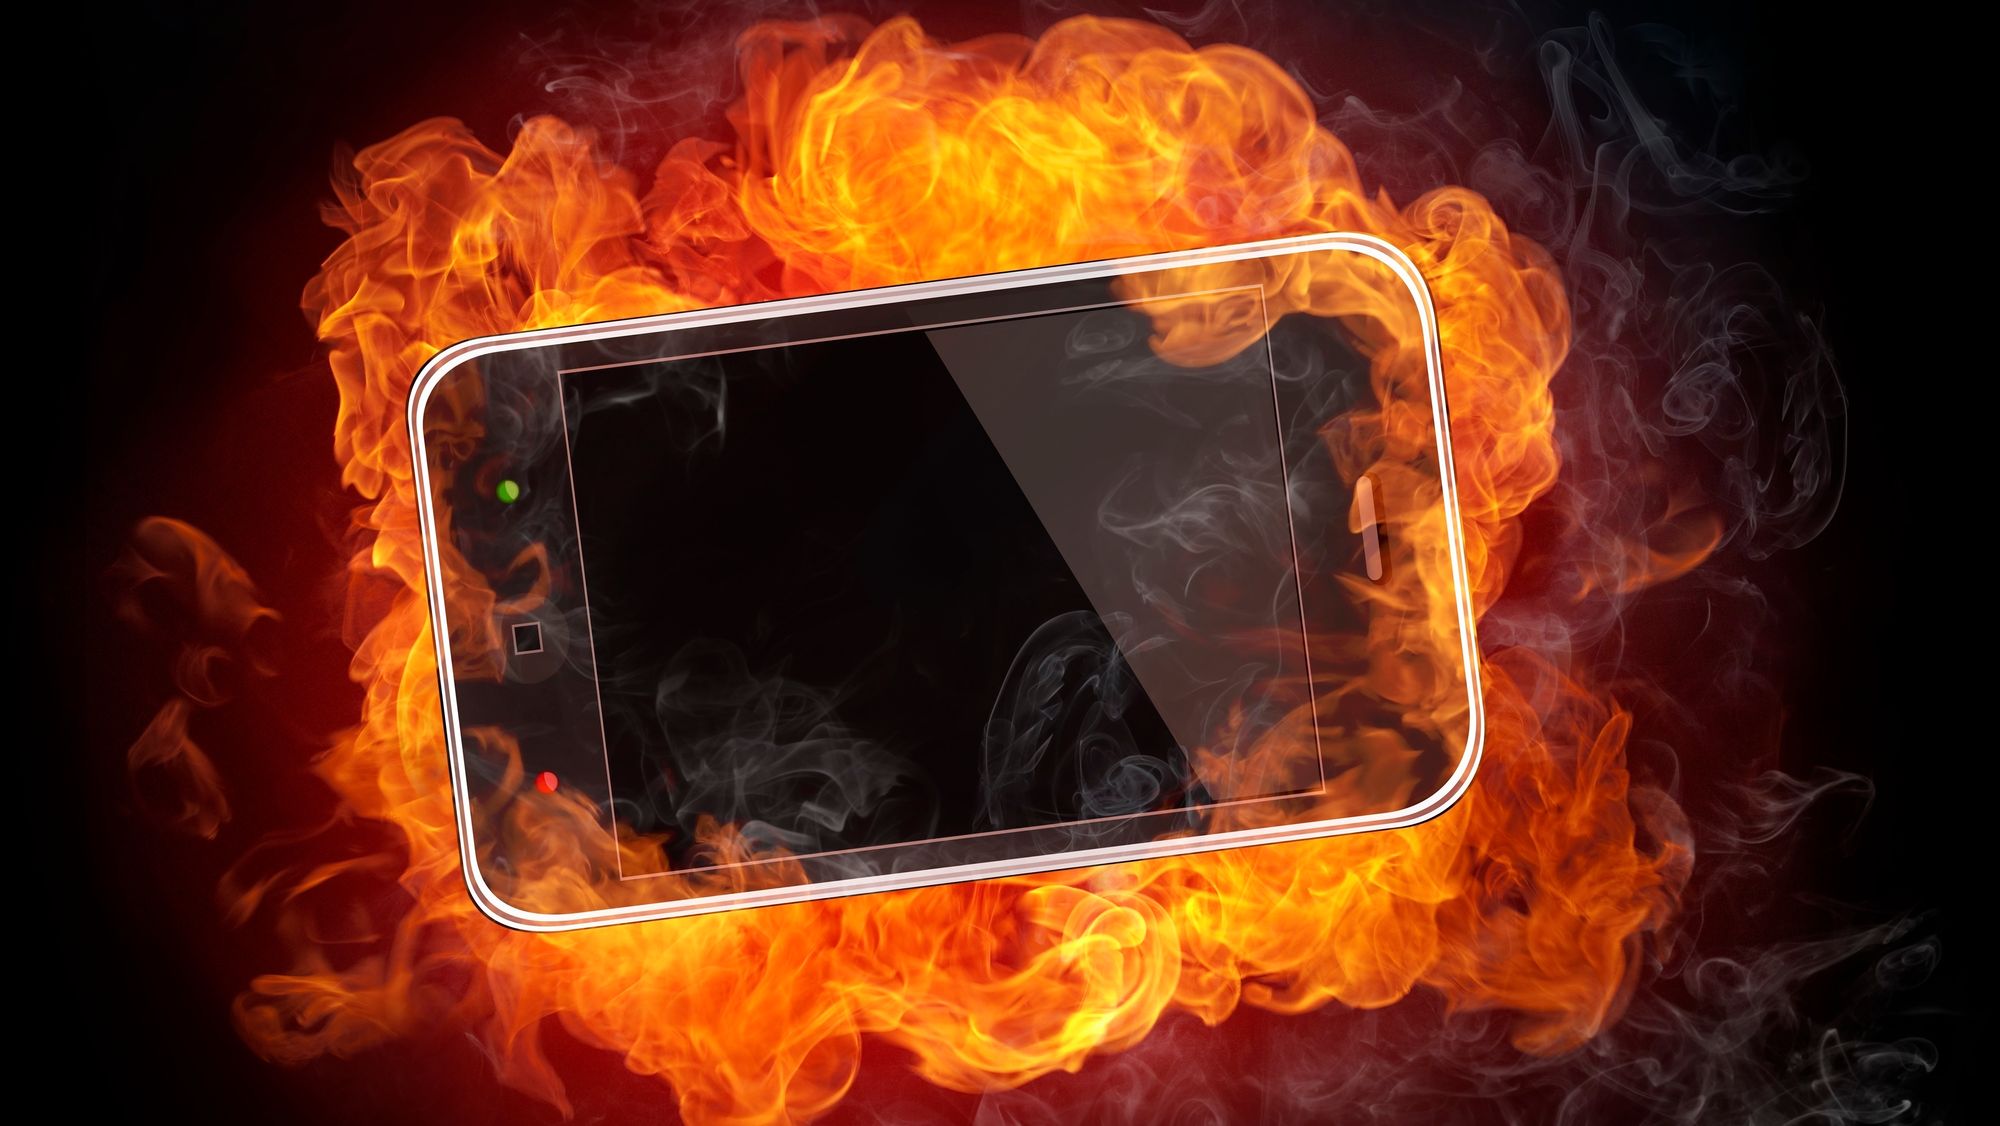 Brennende mobil.